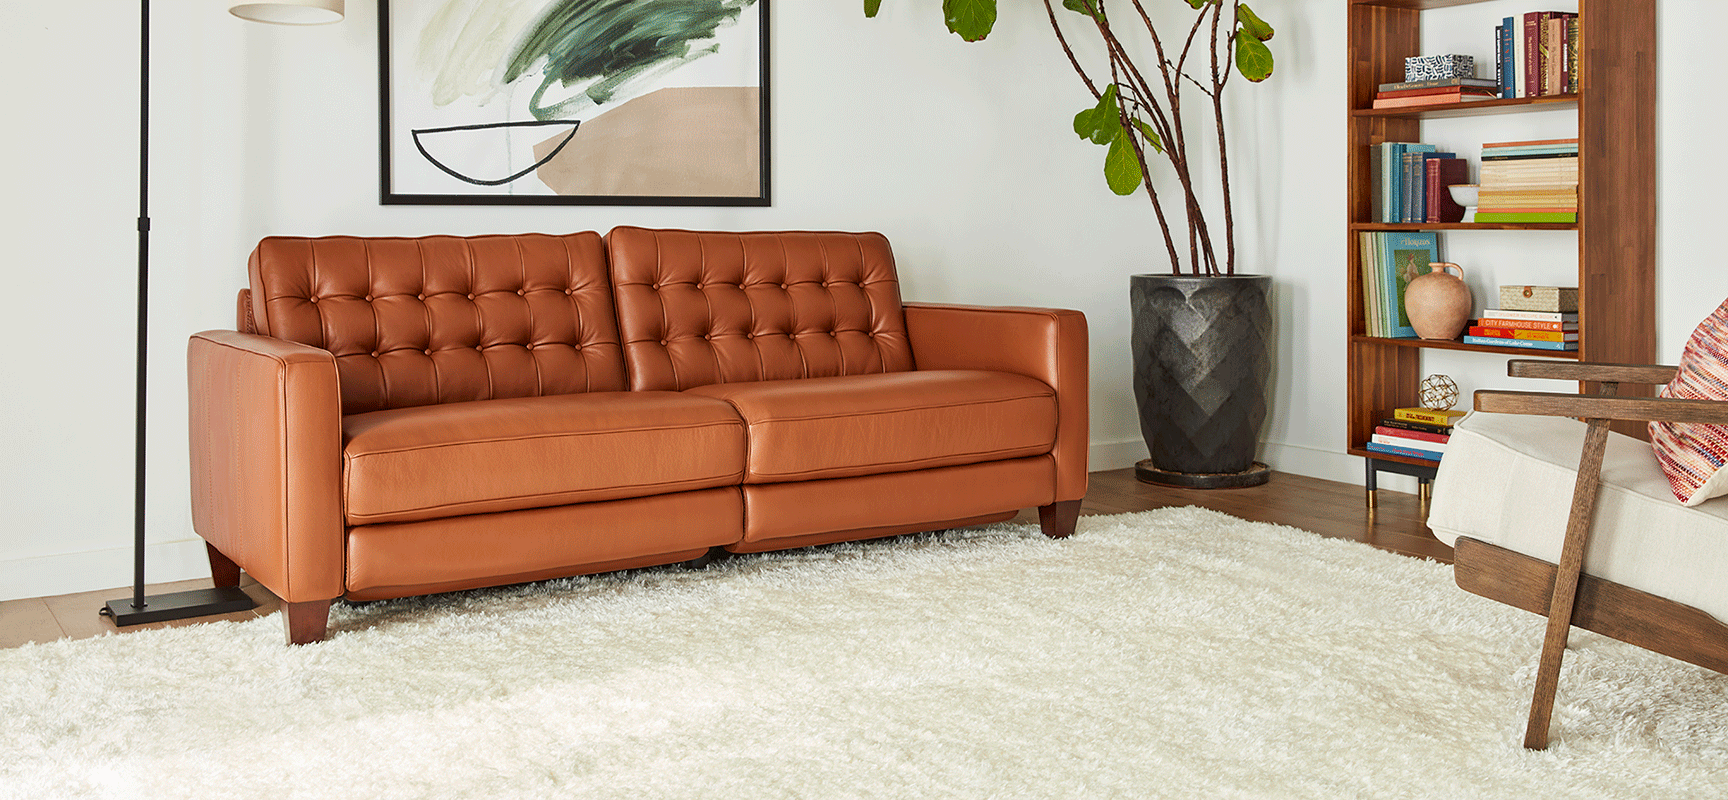 Toranado Leather Sofa With Power